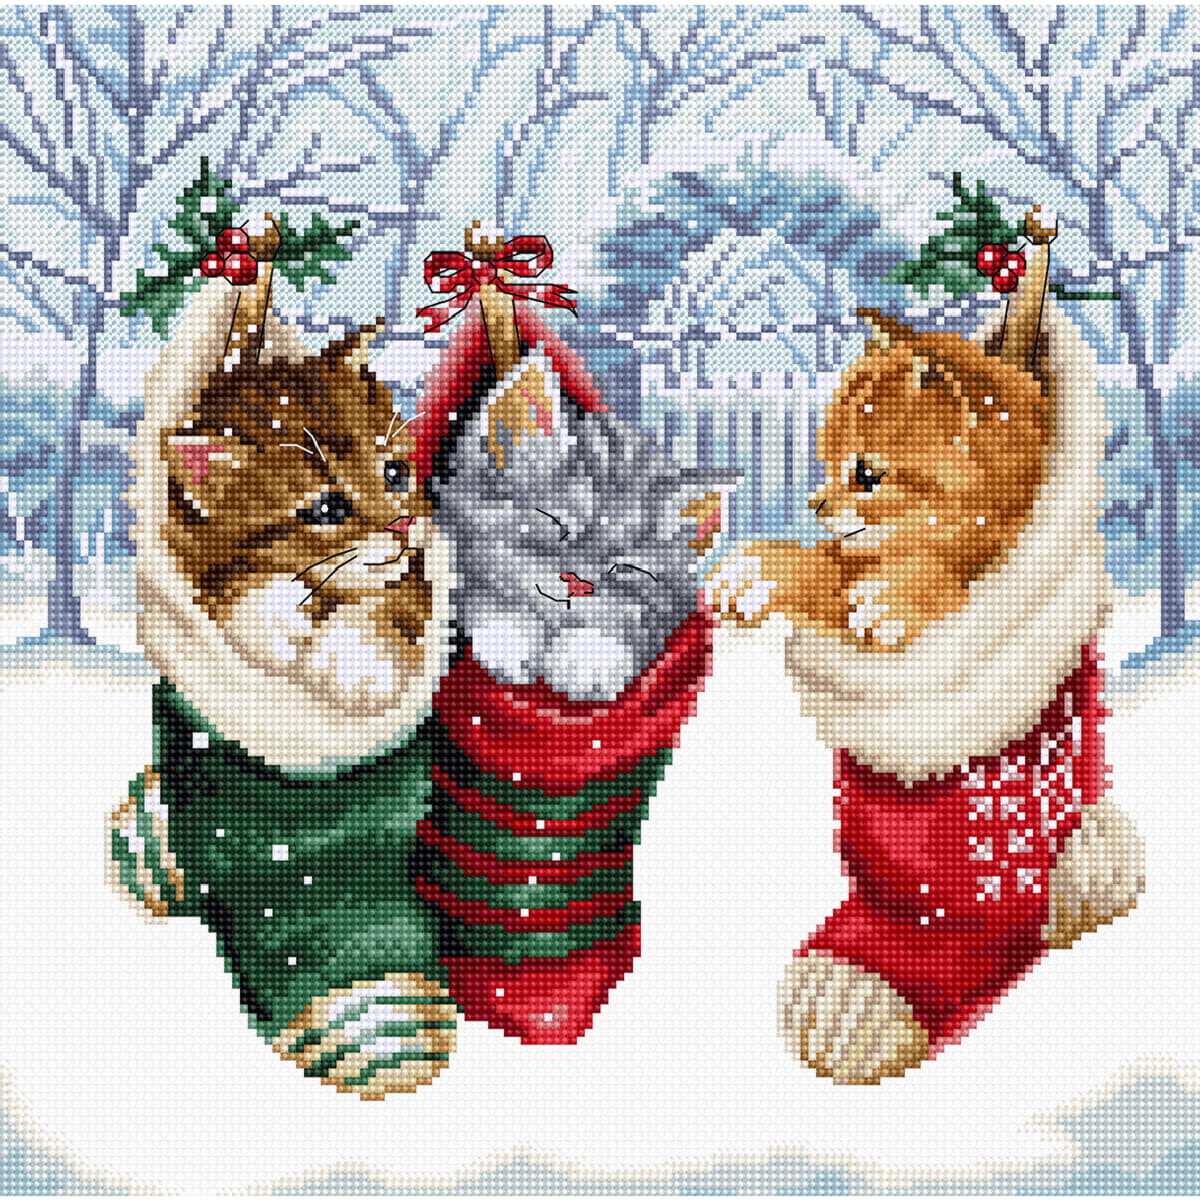 Tre gattini si accoccolano in calze natalizie in una...